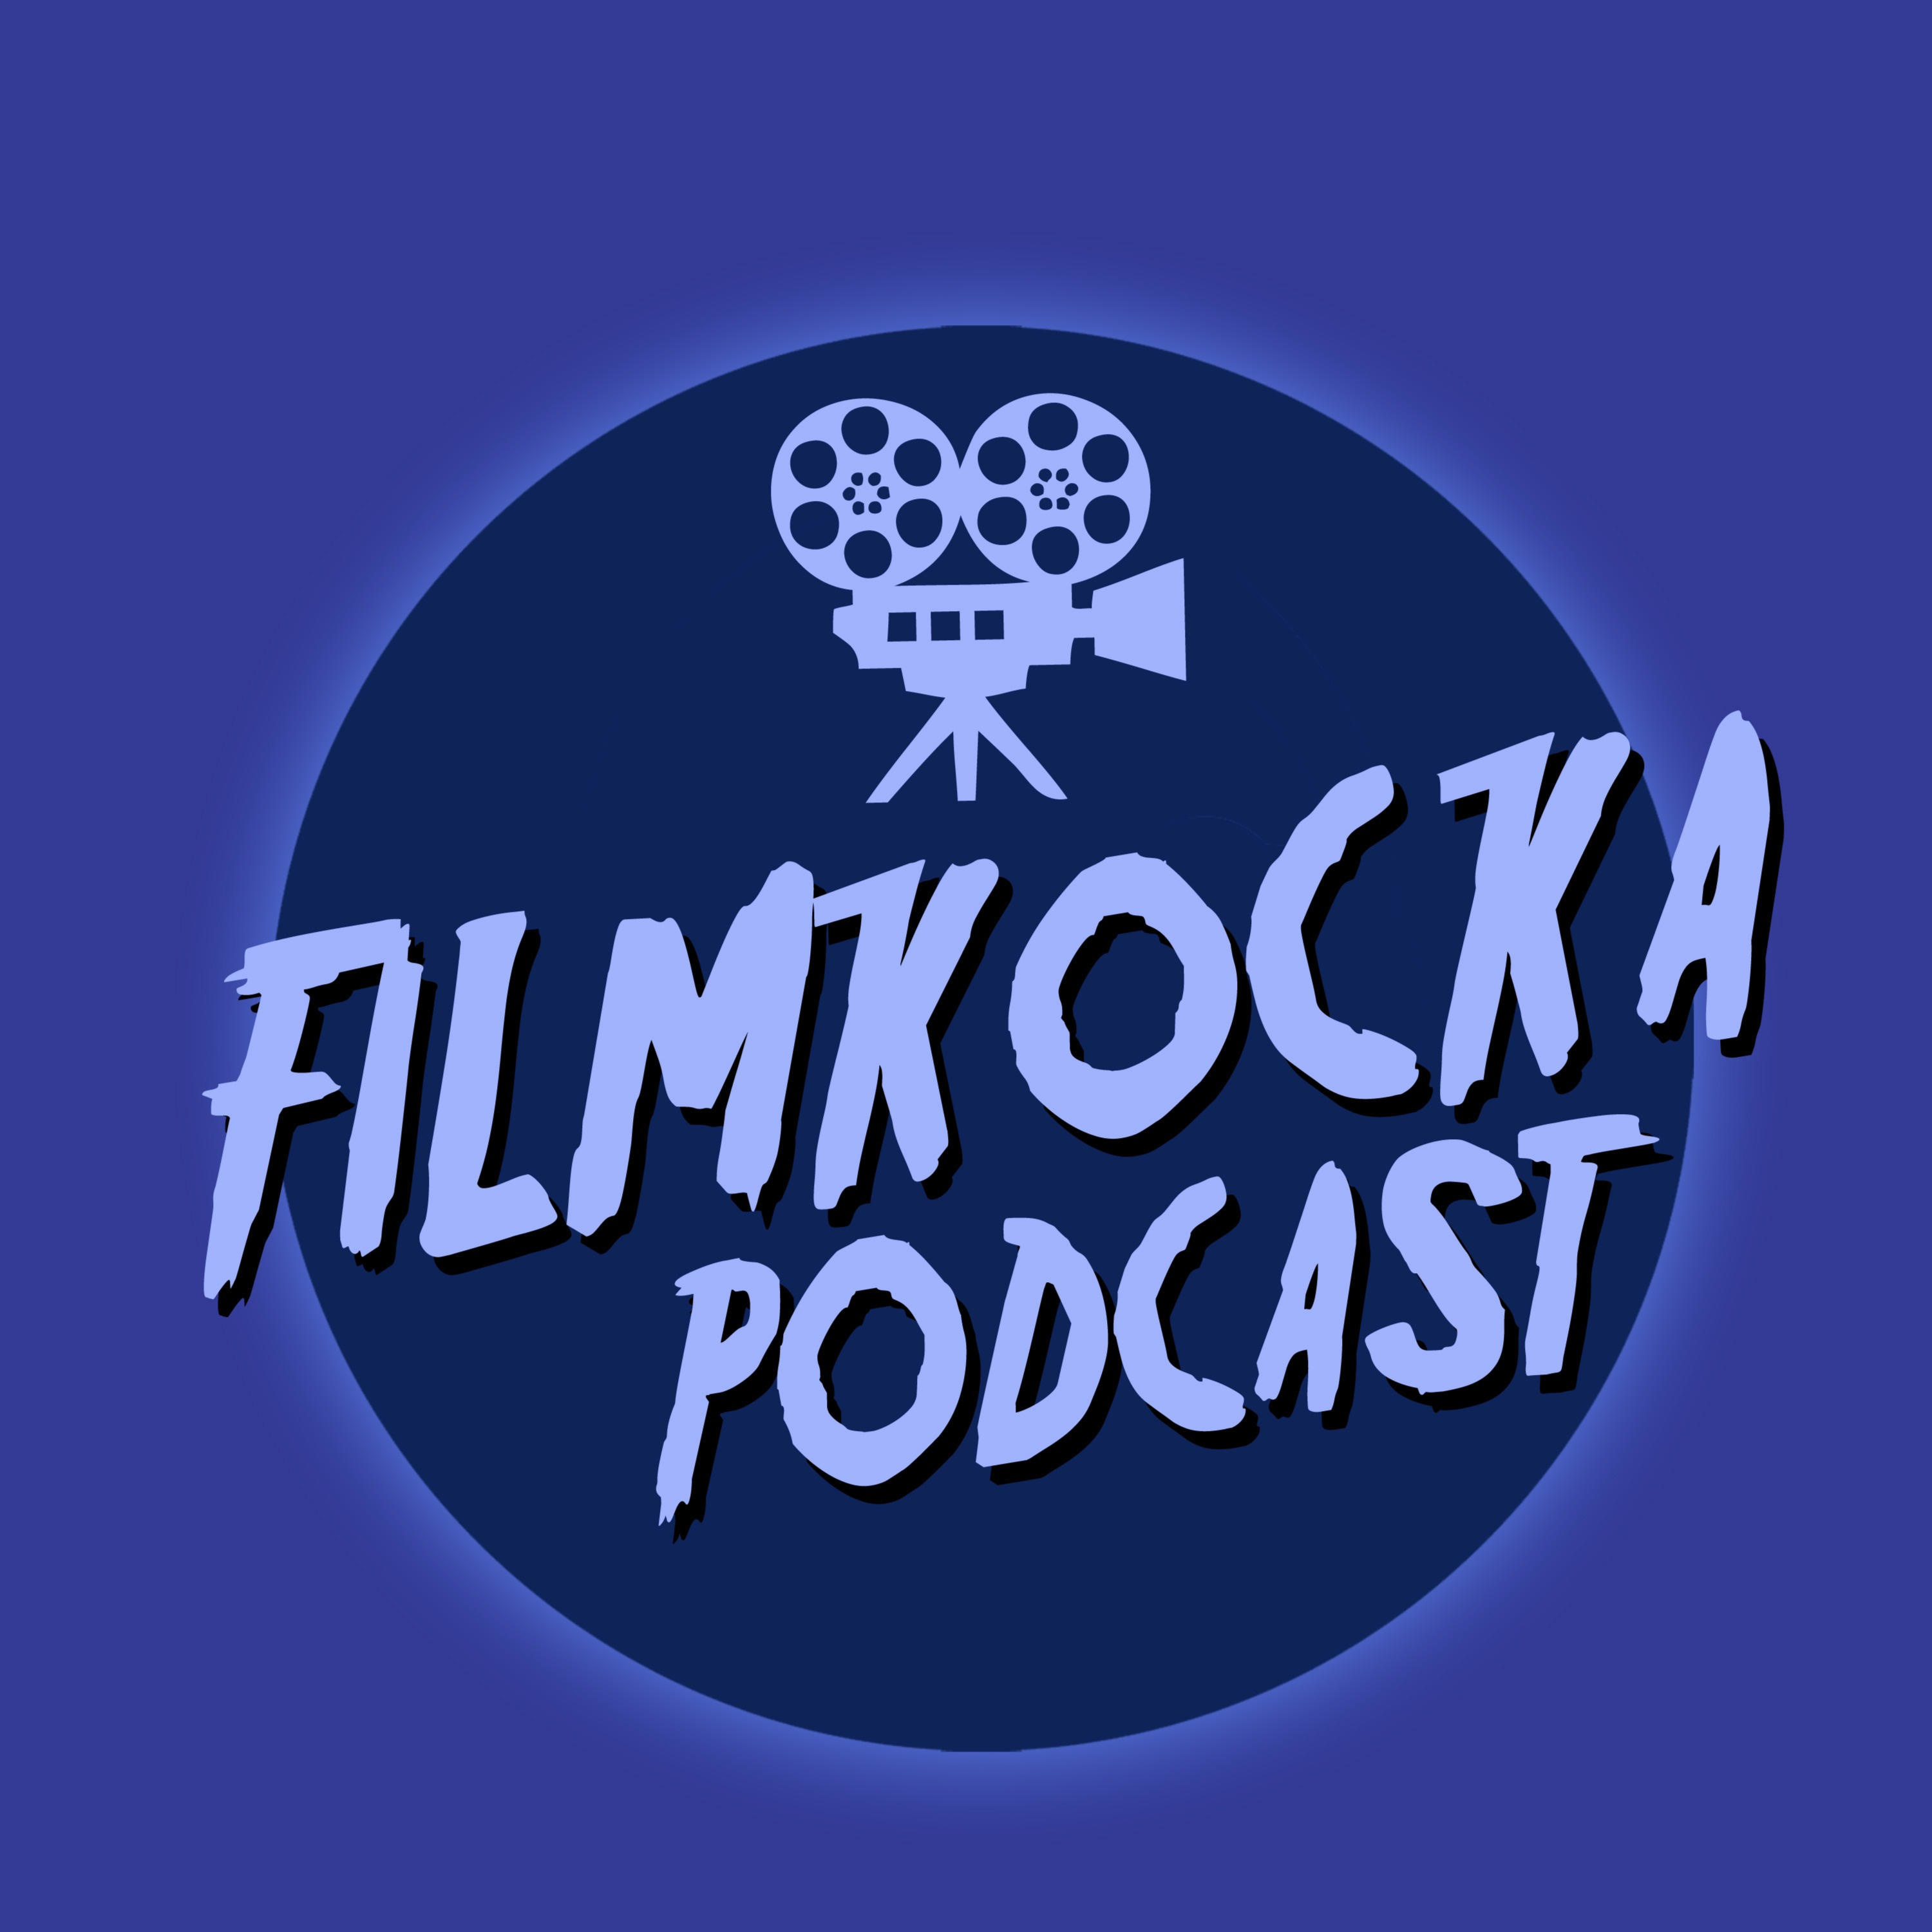 Filmkocka podcast